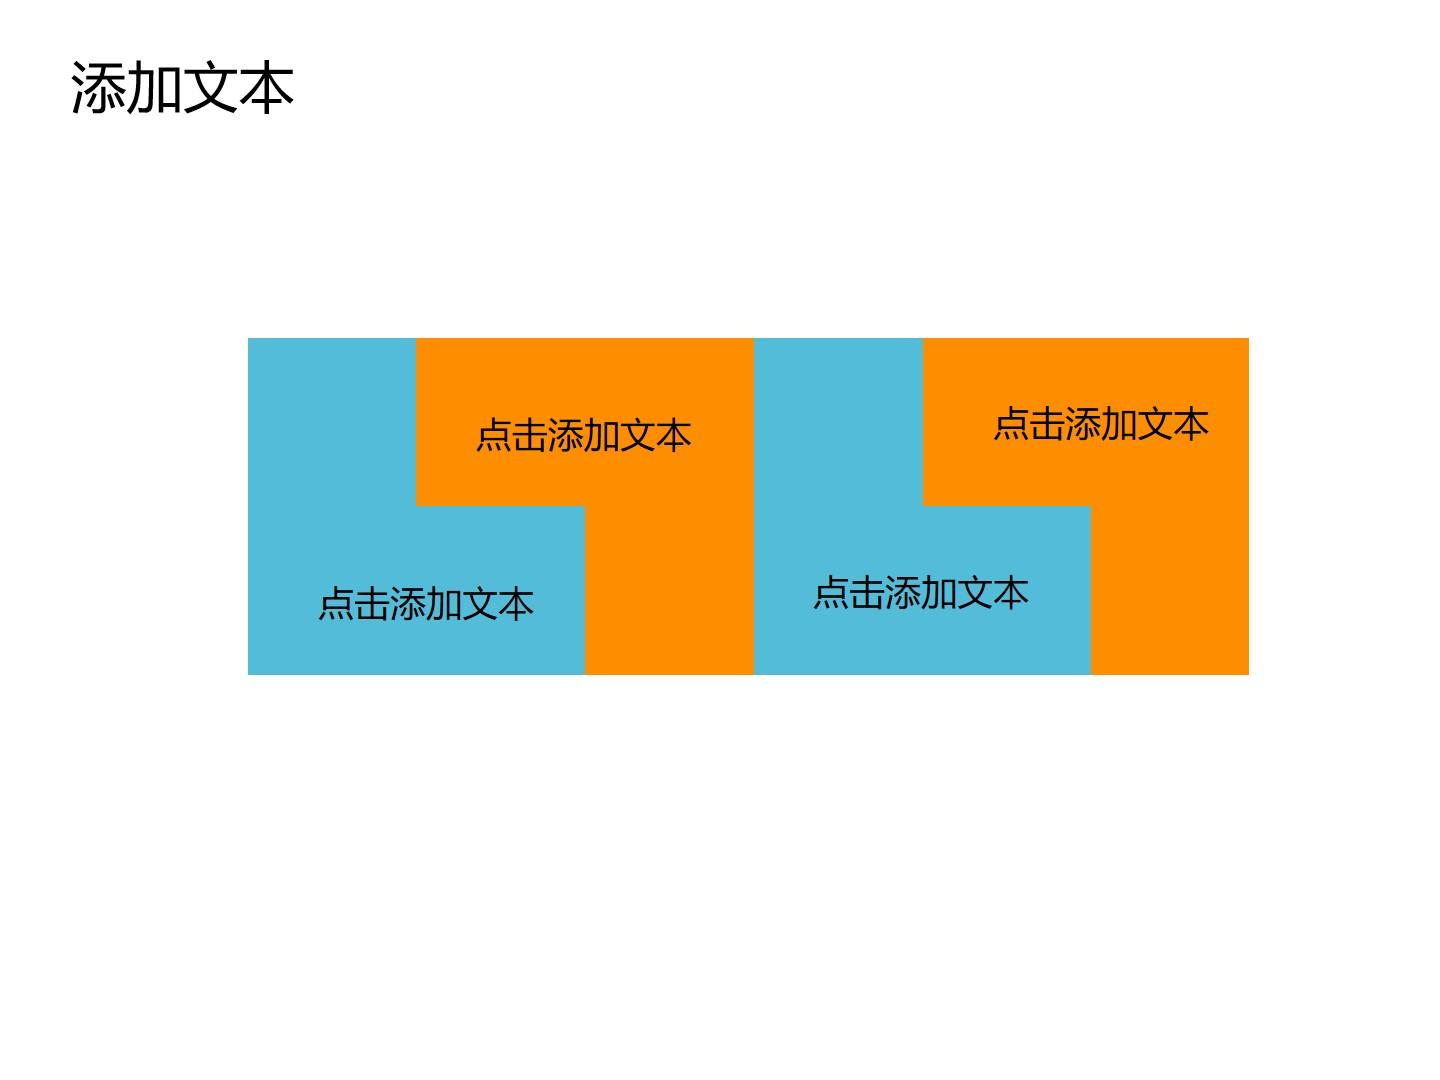 教育教学青色橙色白色标准简洁云素材PPT模板1672690776401